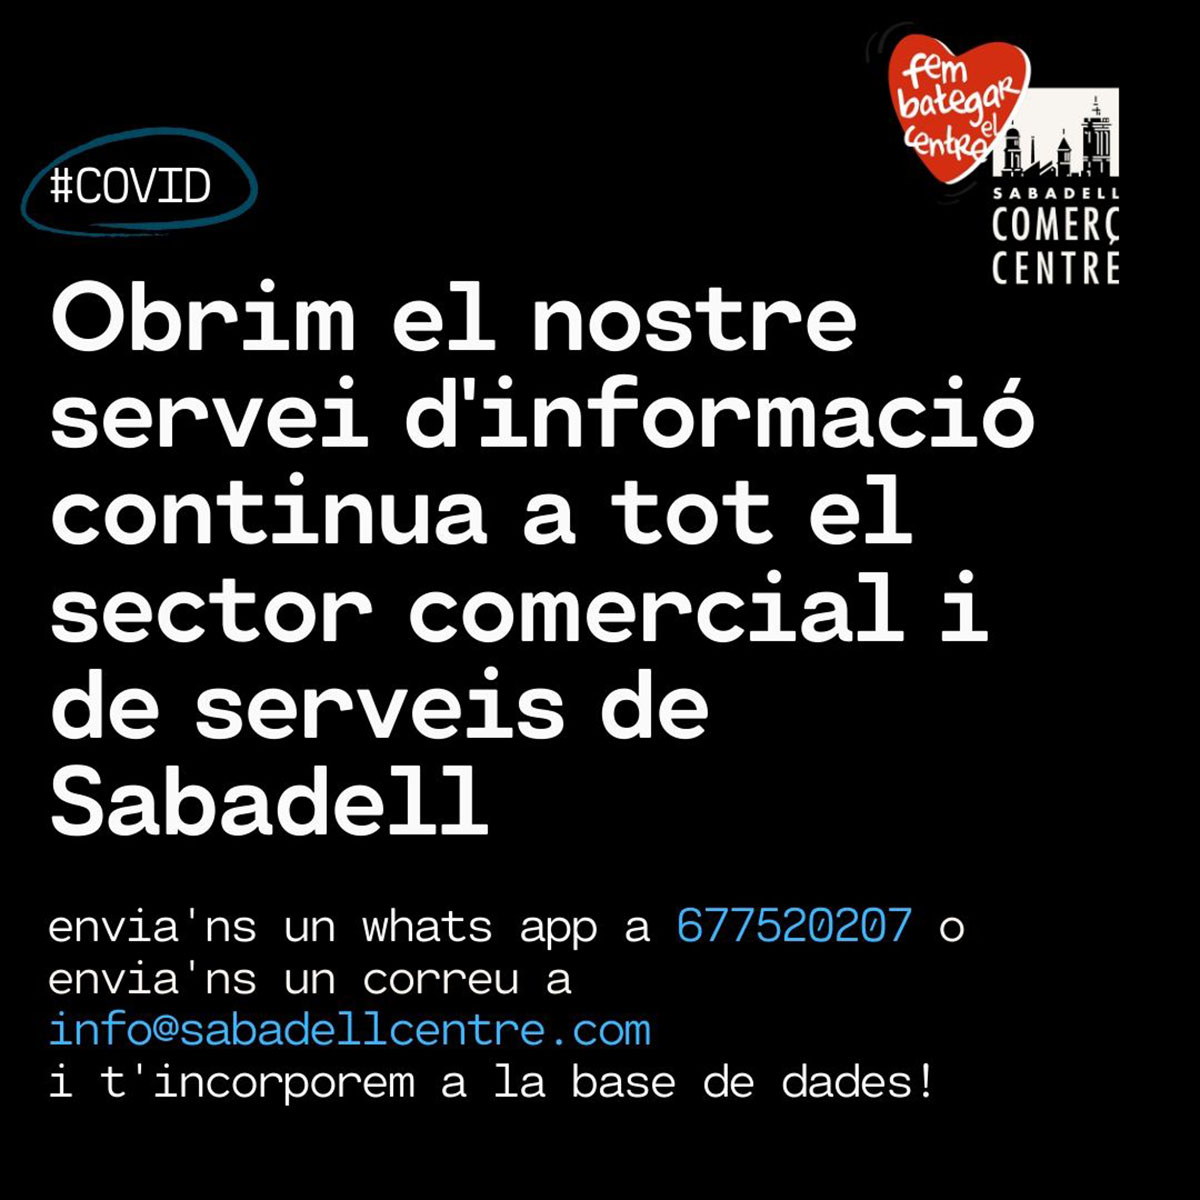 Sabadell Comerç Centre impulsa un cana per informar a tot el sector comercial i de serveis donant informació continuada 